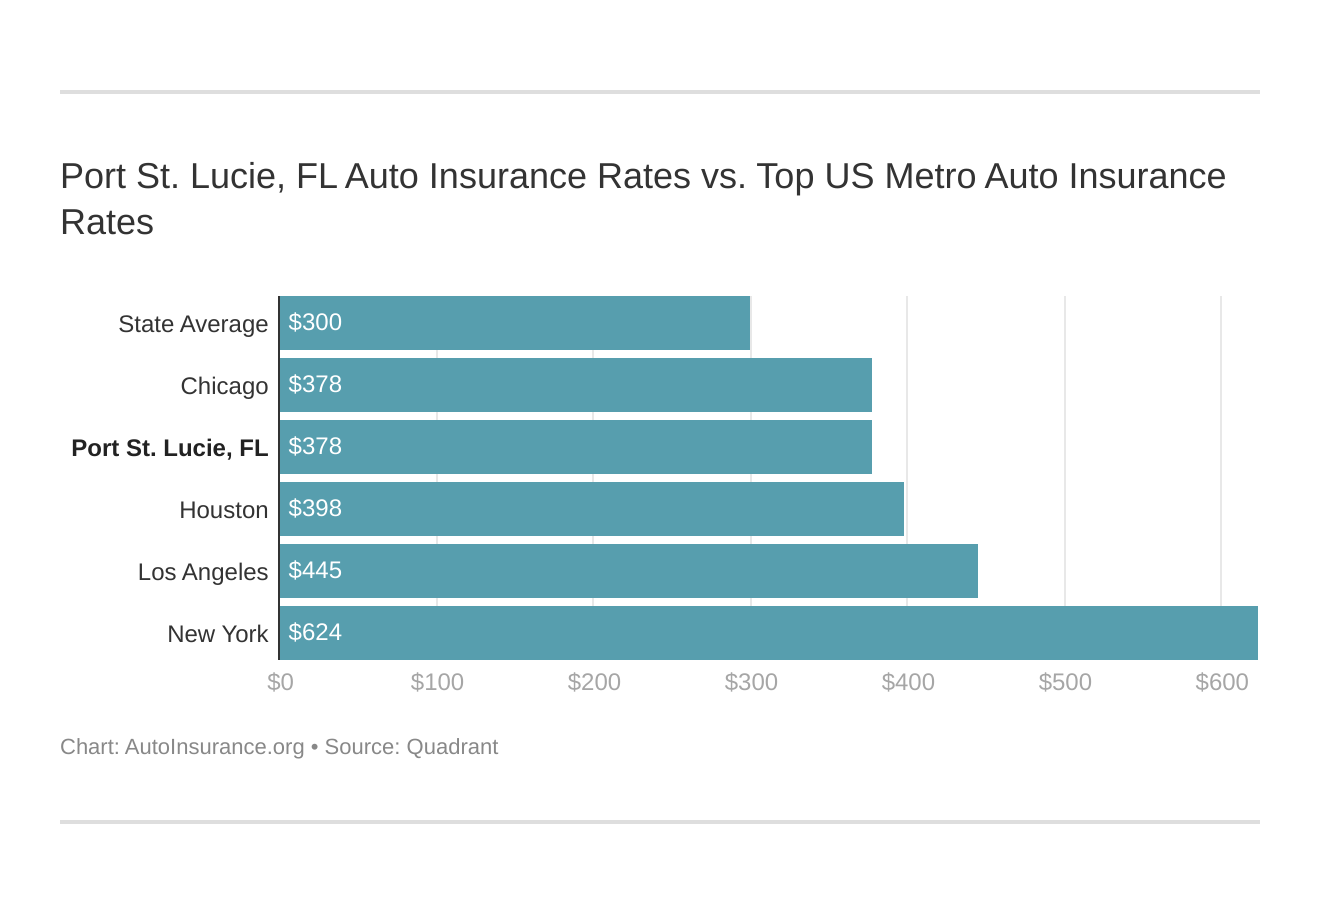 Port St. Lucie, FL Auto Insurance Rates vs. Top US Metro Auto Insurance Rates